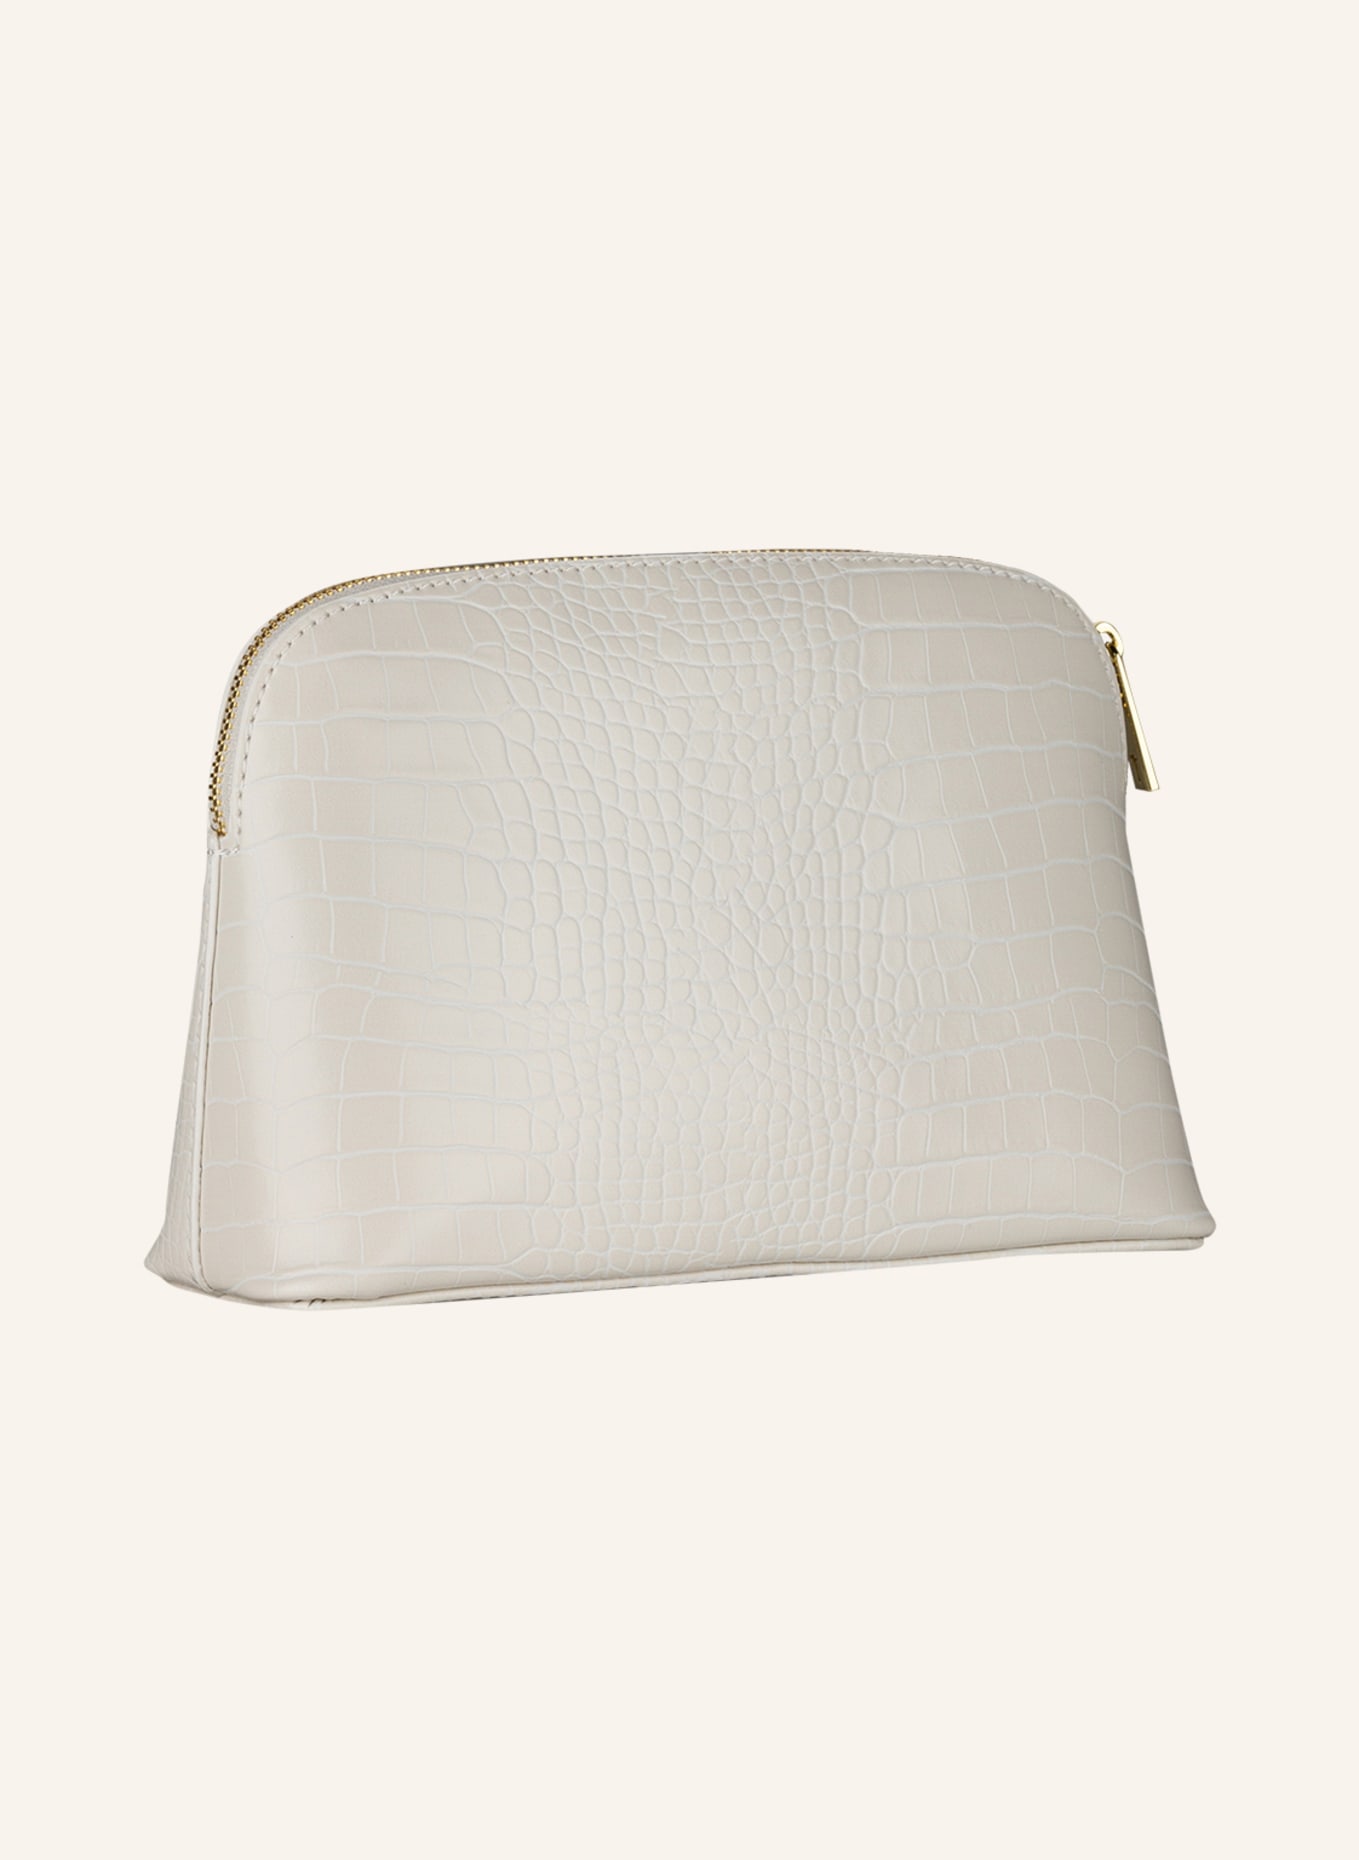 TED BAKER Makeup bag CROCALA, Color: WHITE (Image 2)